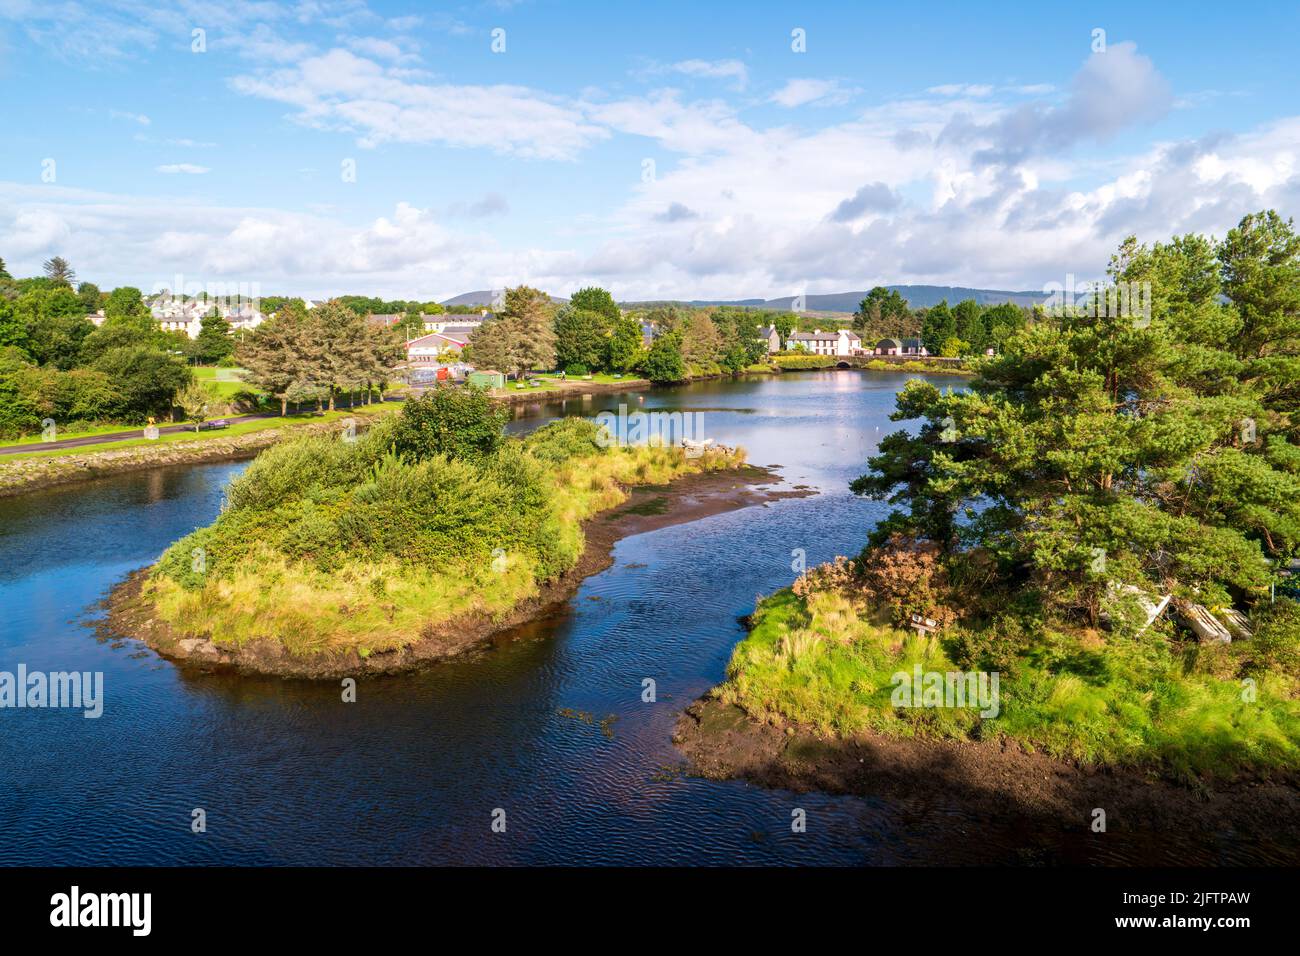 Das malerische Dorf Ballydehob liegt am Ufer des Flusses Bawnaknockane in der Grafschaft Cork, Irland. Stockfoto